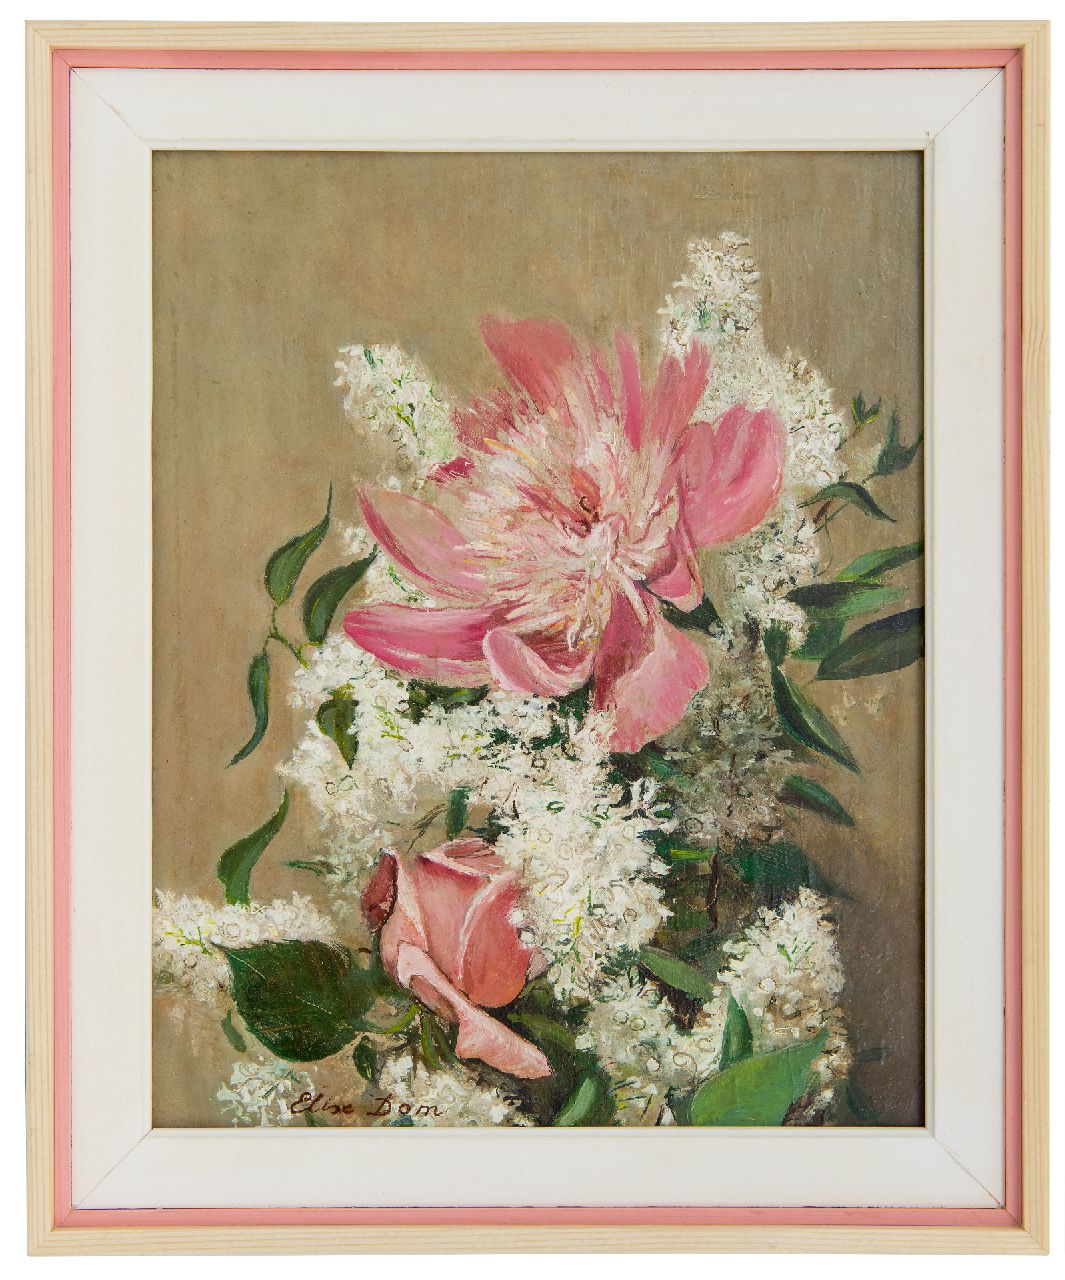 Dom E.L.  | 'Elise' Louise Dom | Schilderijen te koop aangeboden | Bloemstilleven, olieverf op paneel 21,0 x 28,0 cm